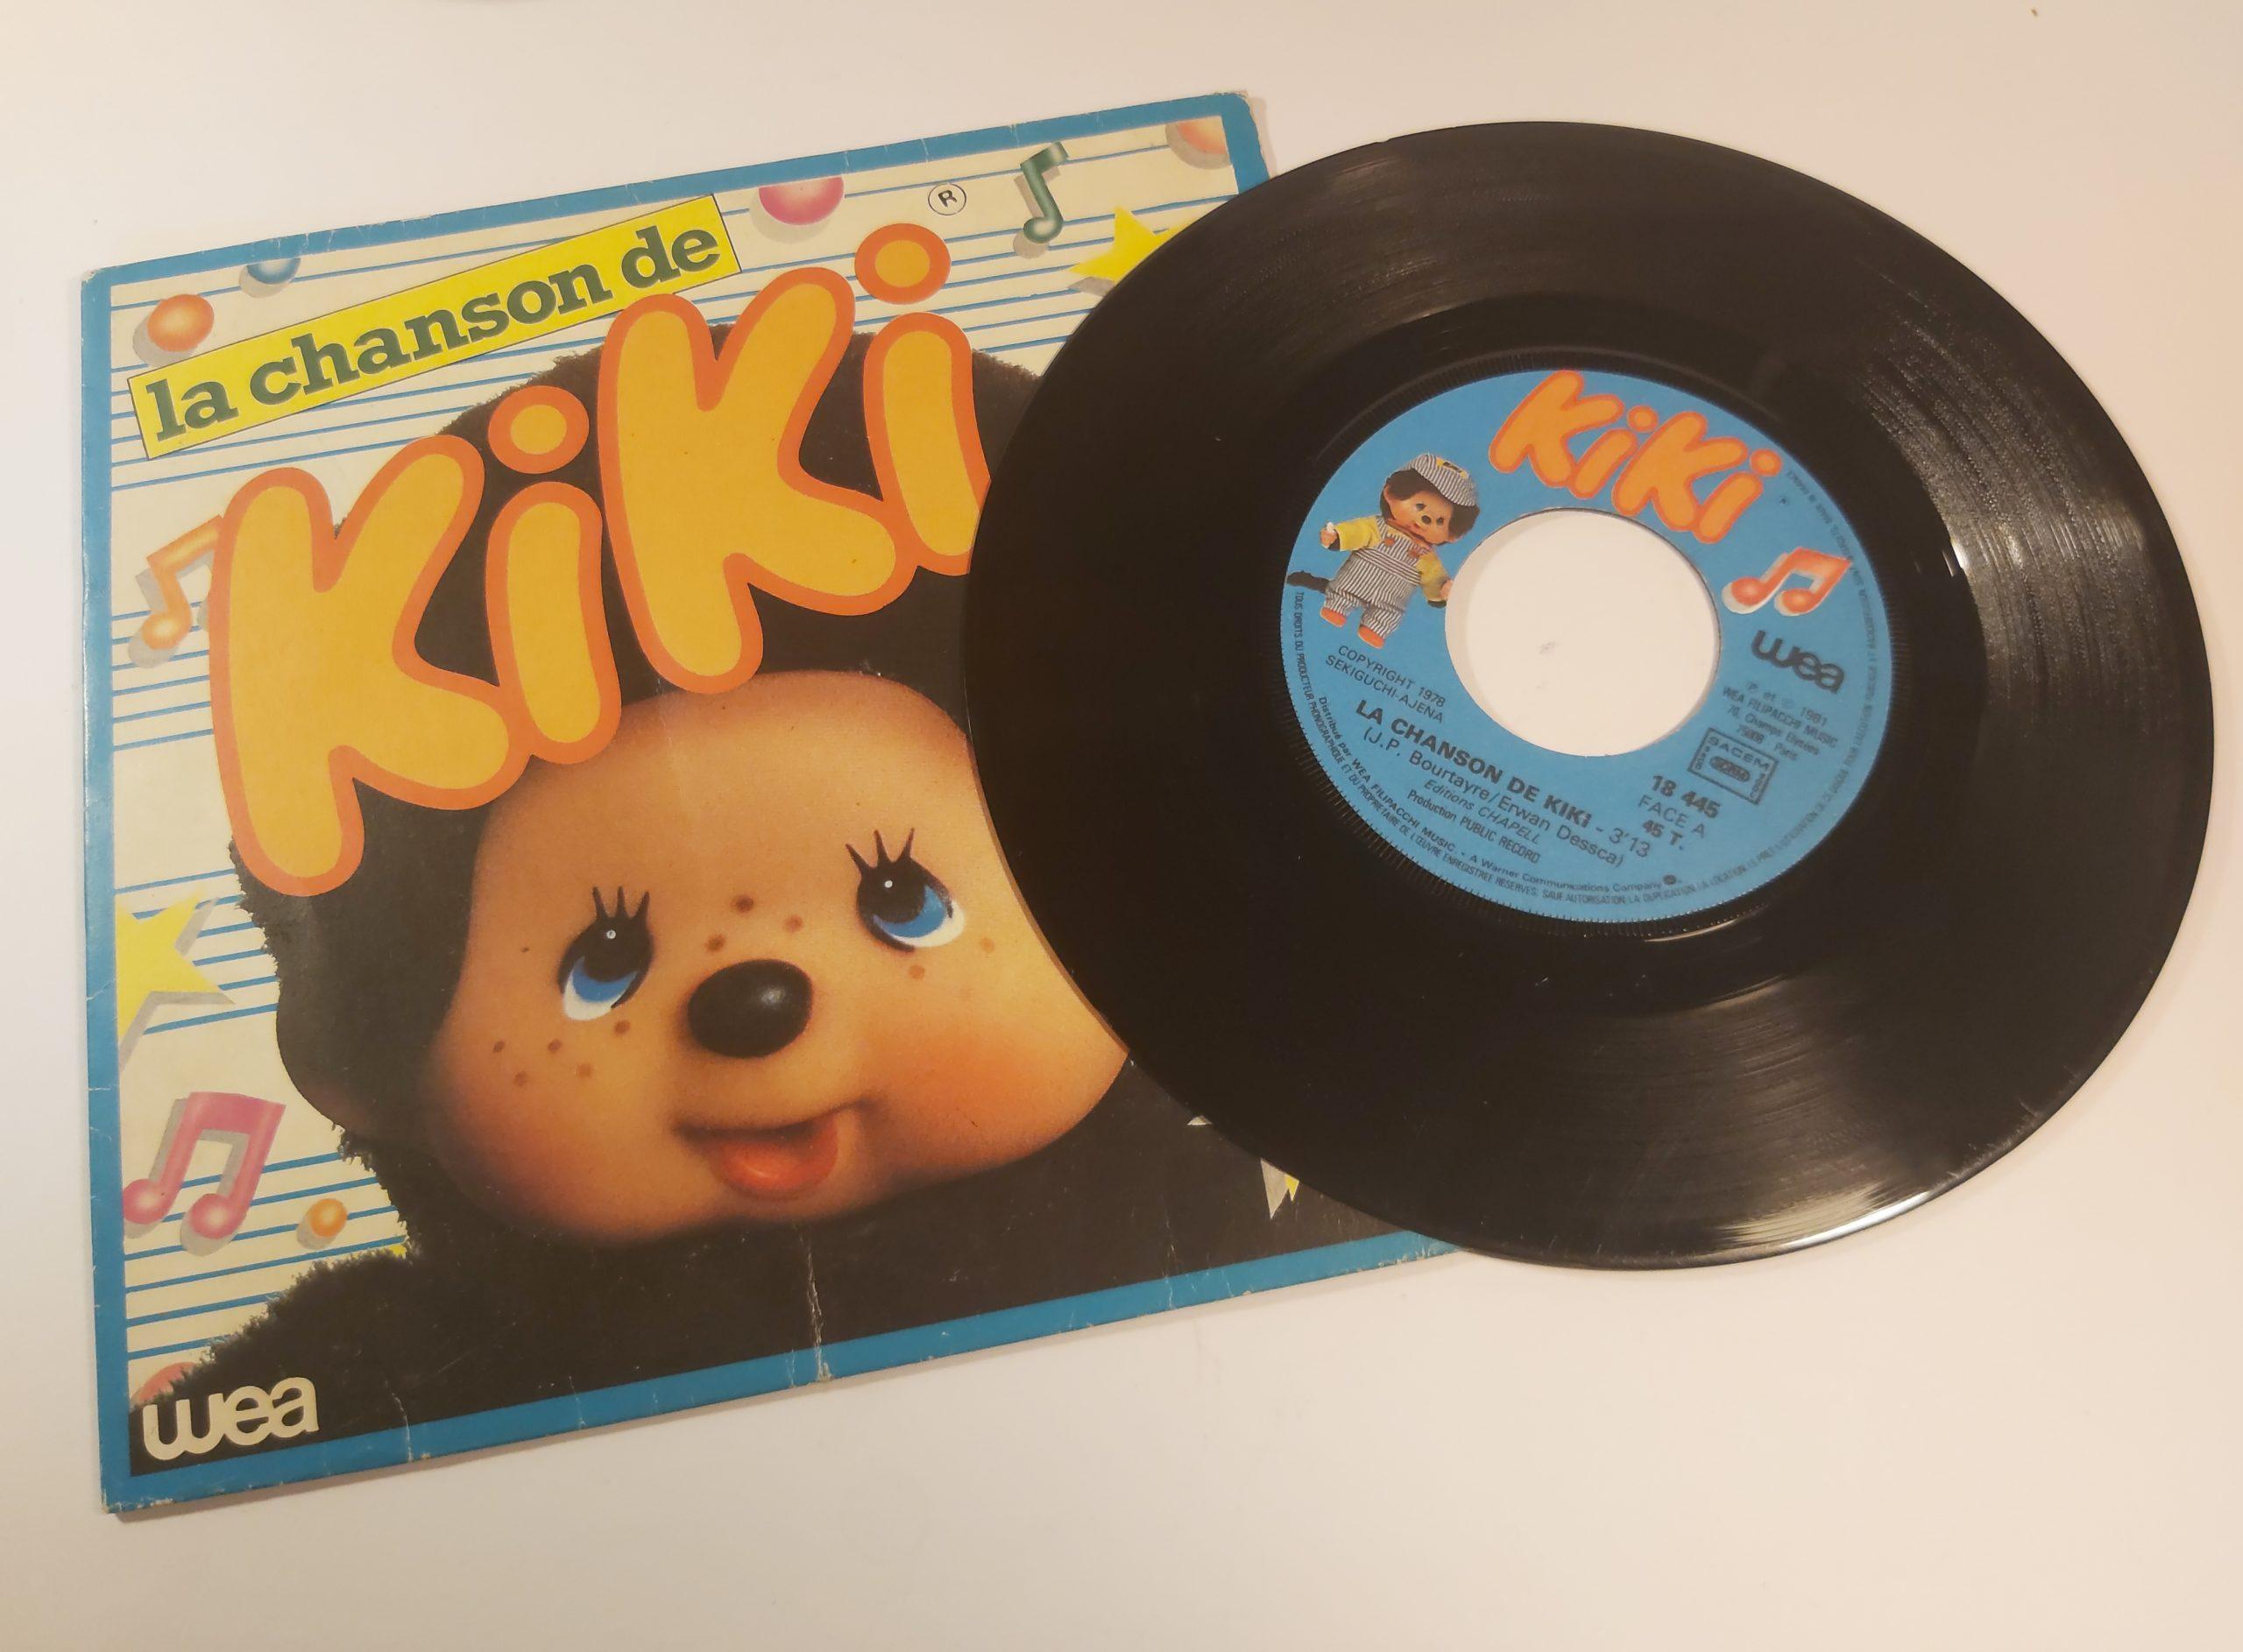 Kiki - La chanson de Kiki (1981) - Vidéo Dailymotion